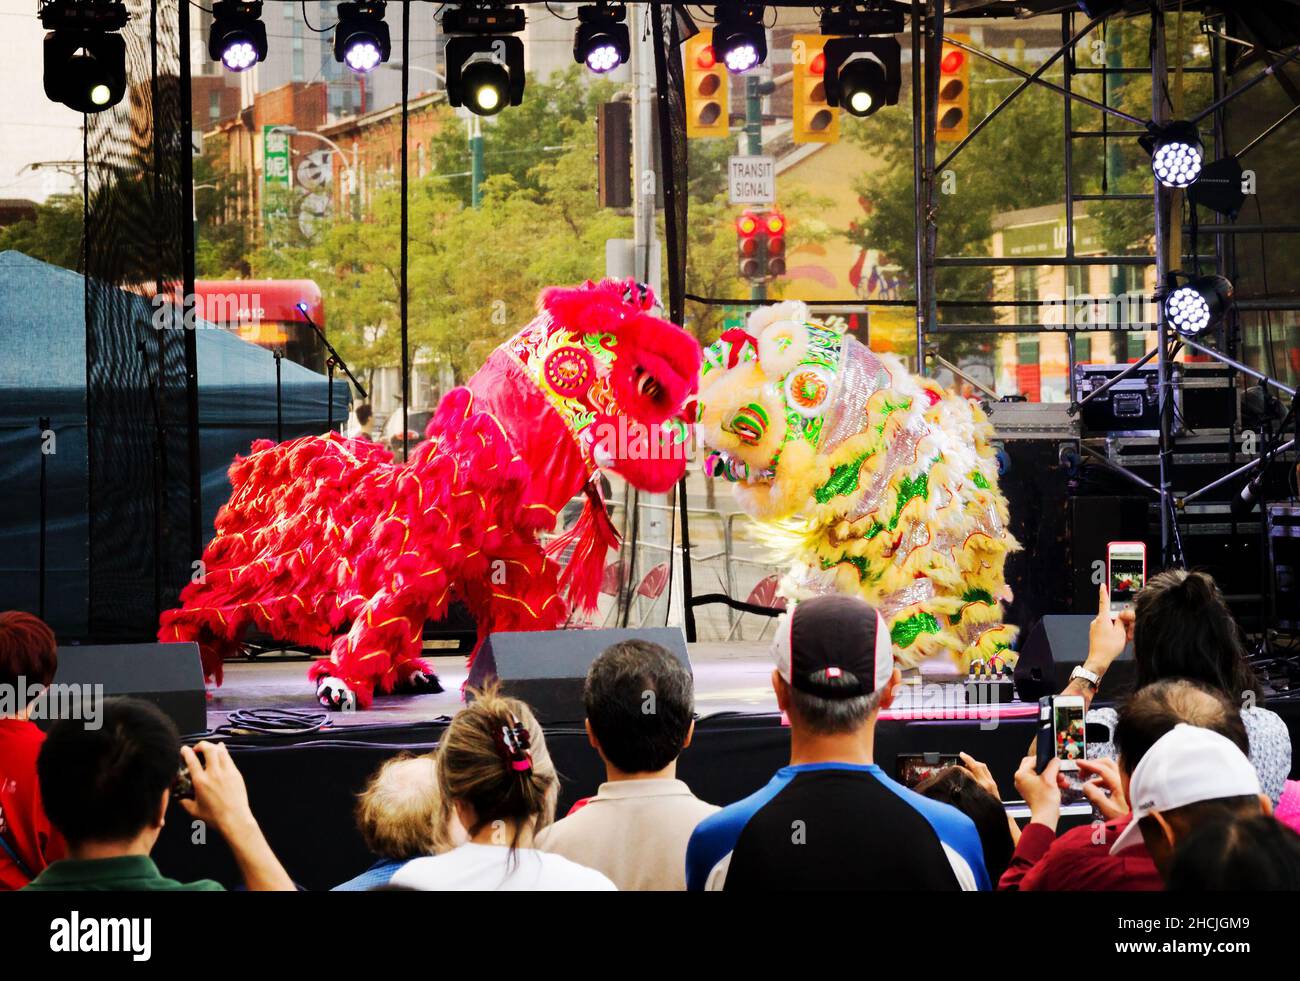 Toronto, Kanada - 08 19 2018: Das Thema des Toronto Chinatown Festivals 18th war Sprung durch das Dragons Gate. Traditionelle volkstümliche Figuren Stockfoto